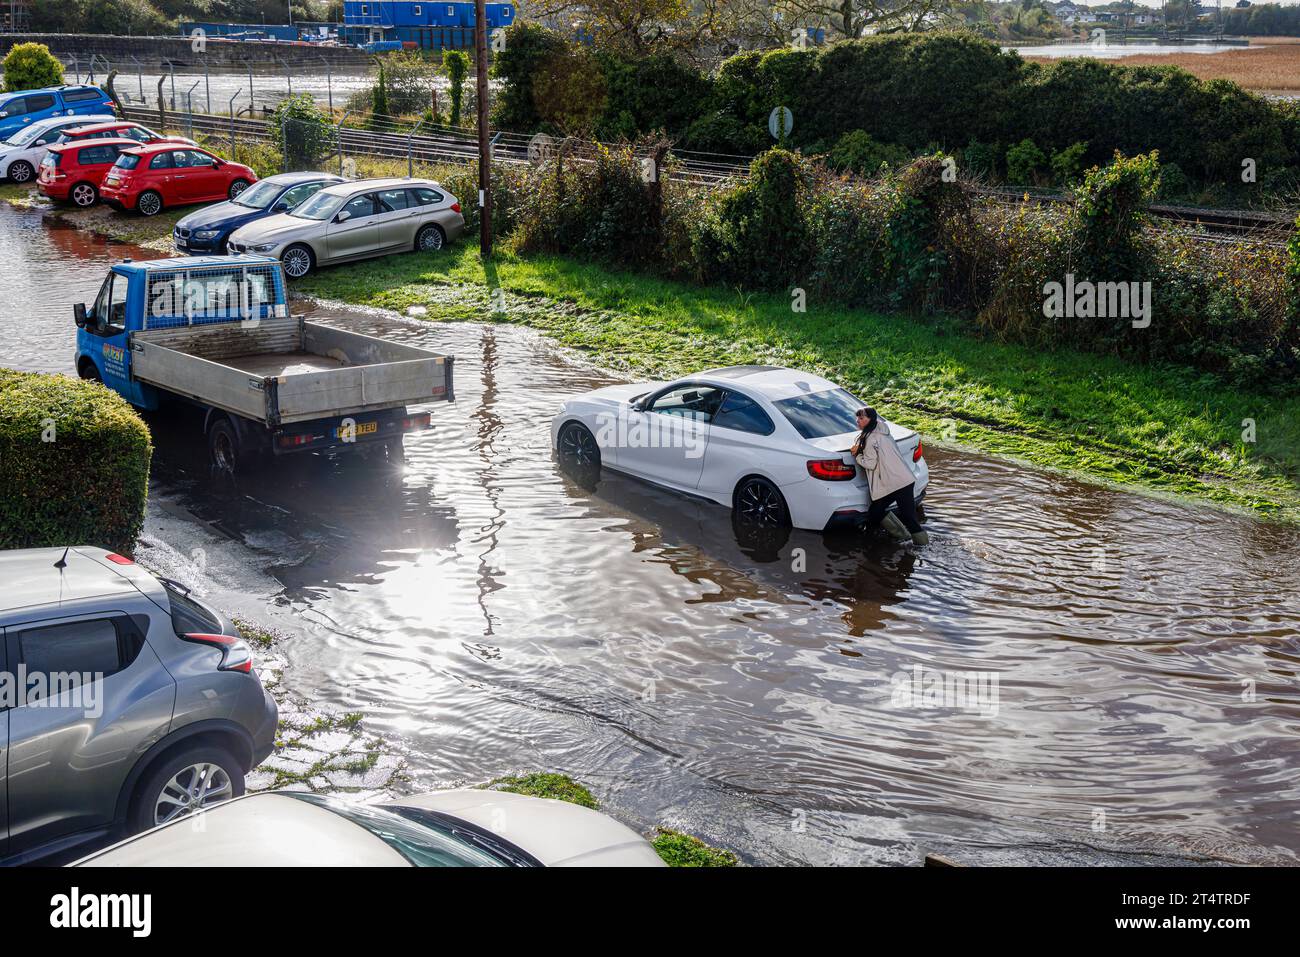 Une femme pousse une voiture BMW blanche en panne échouée sur une route inondée après de fortes pluies et une marée haute sur l'estuaire de la rivière Test à Southampton Banque D'Images